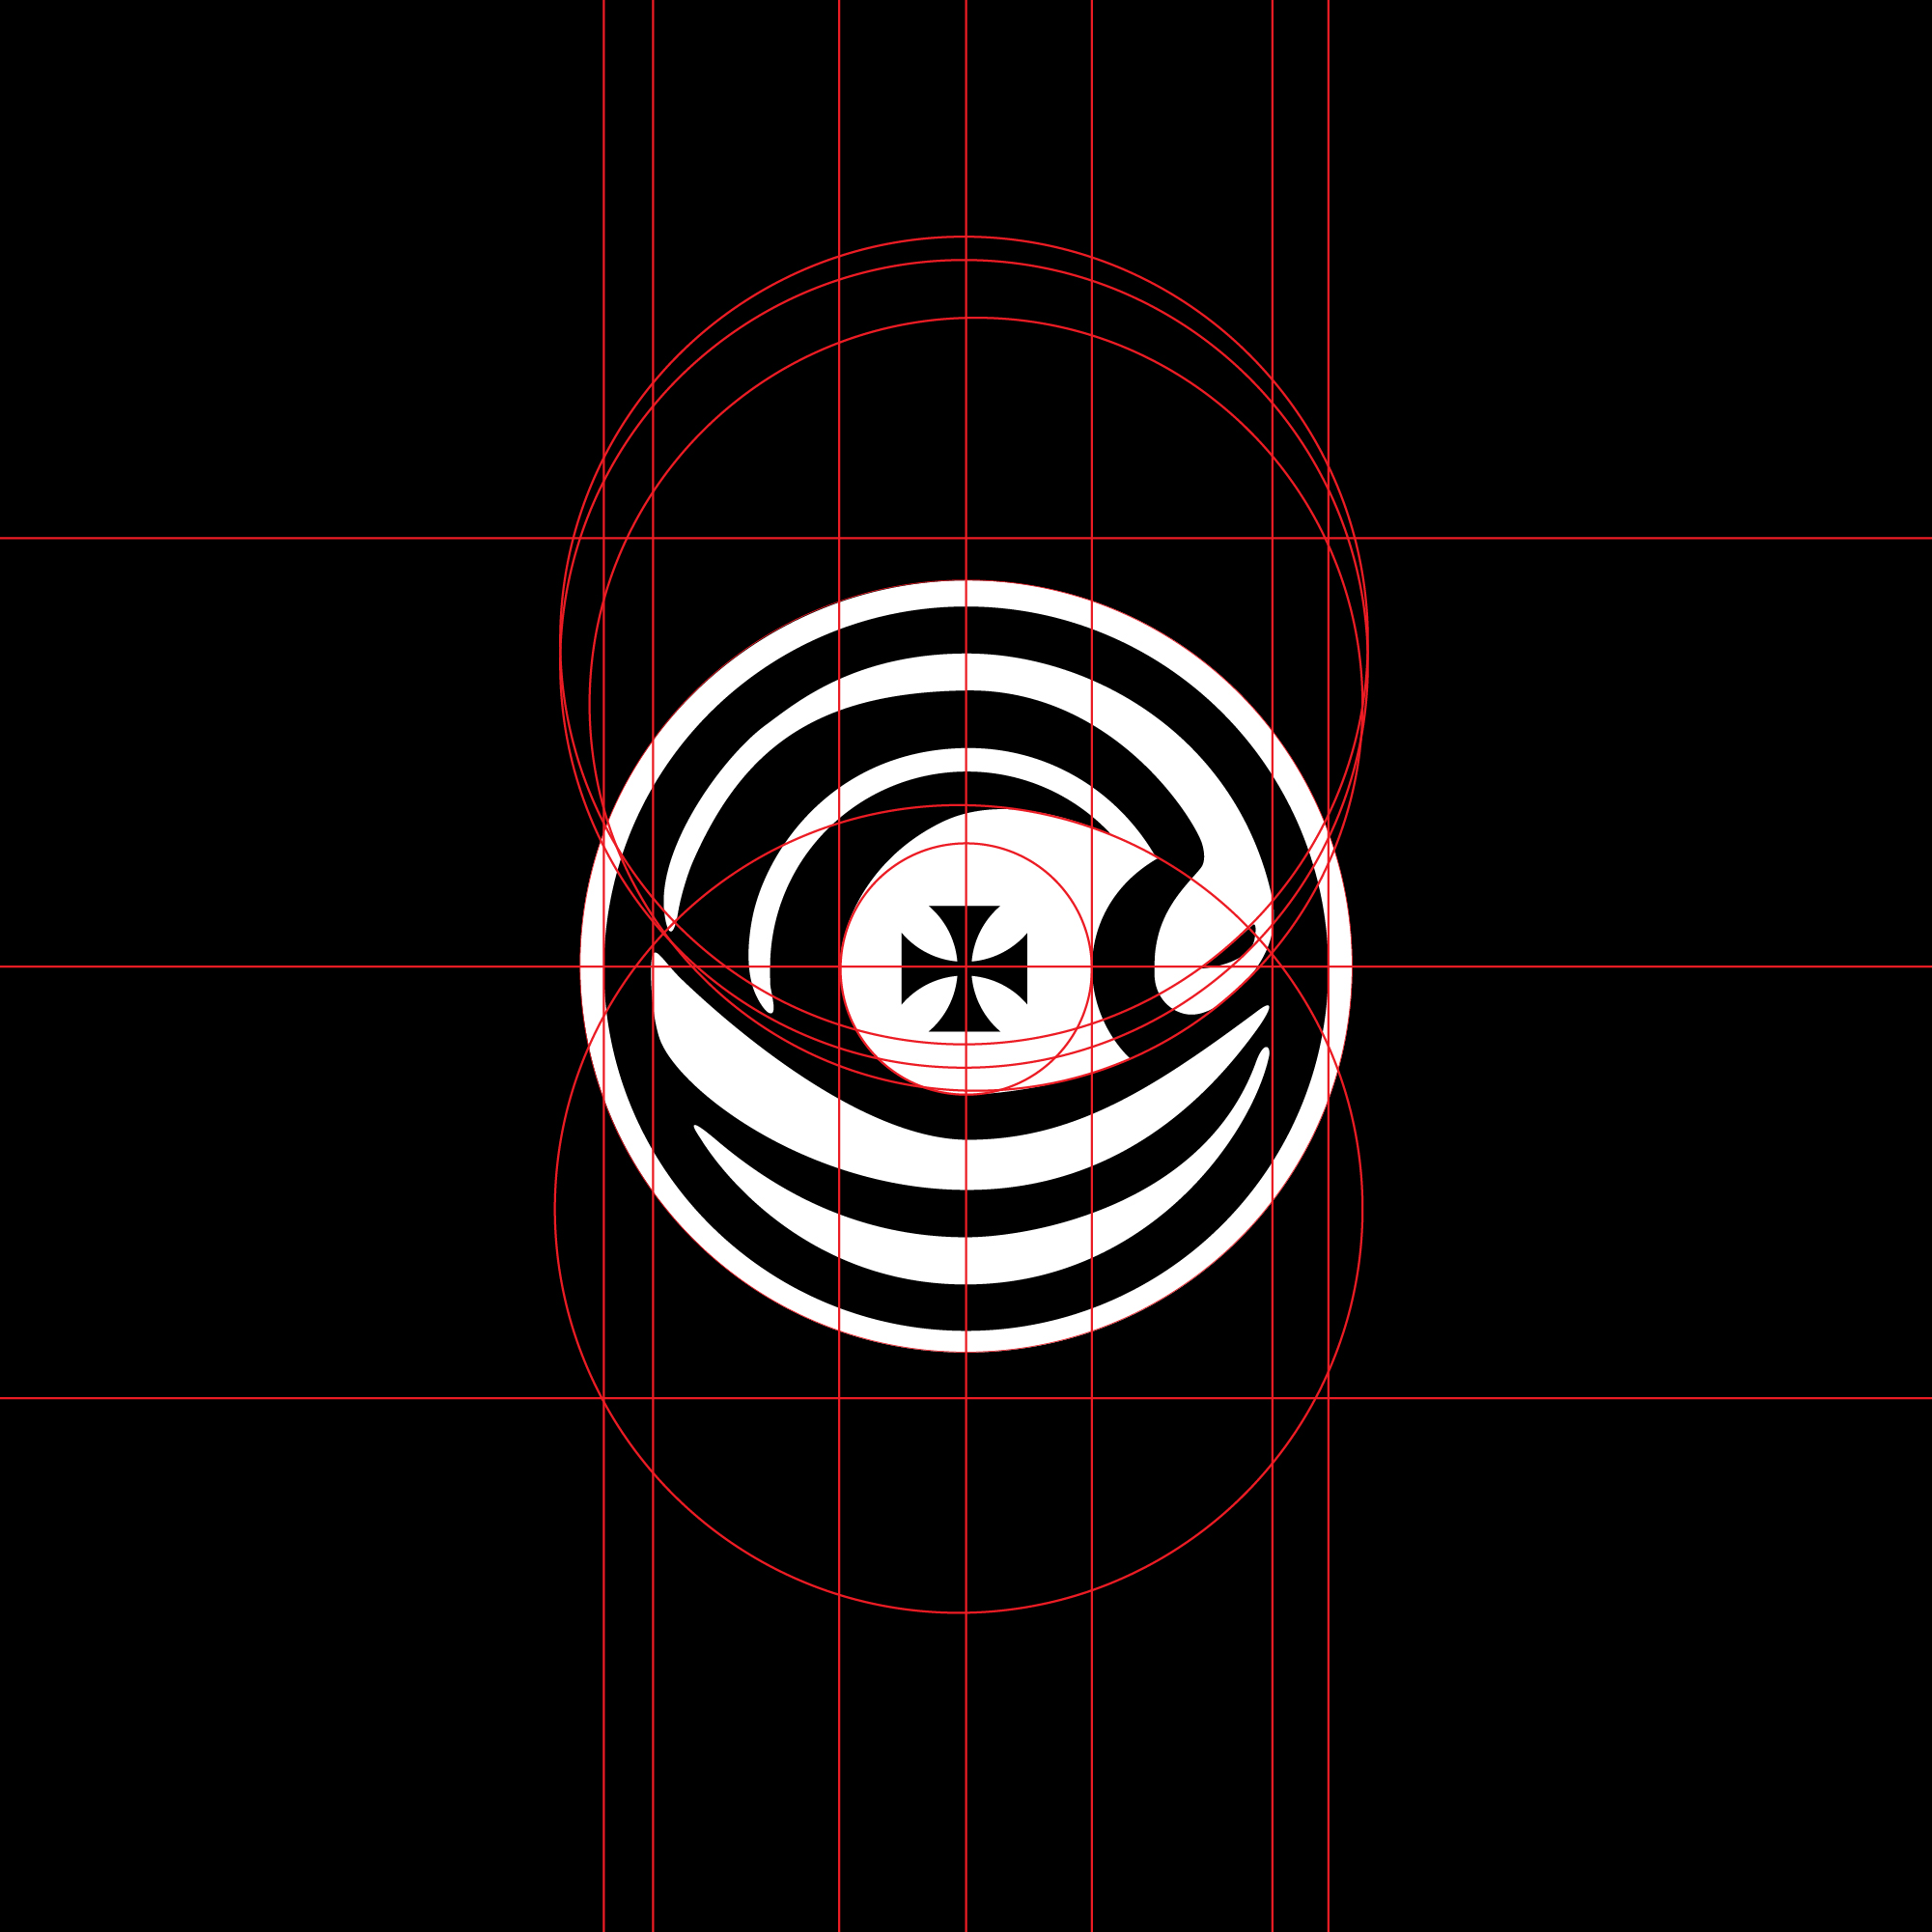 logo-design- black-white-minimalist-round-circle-ship-flag-boat-turquoise-grid